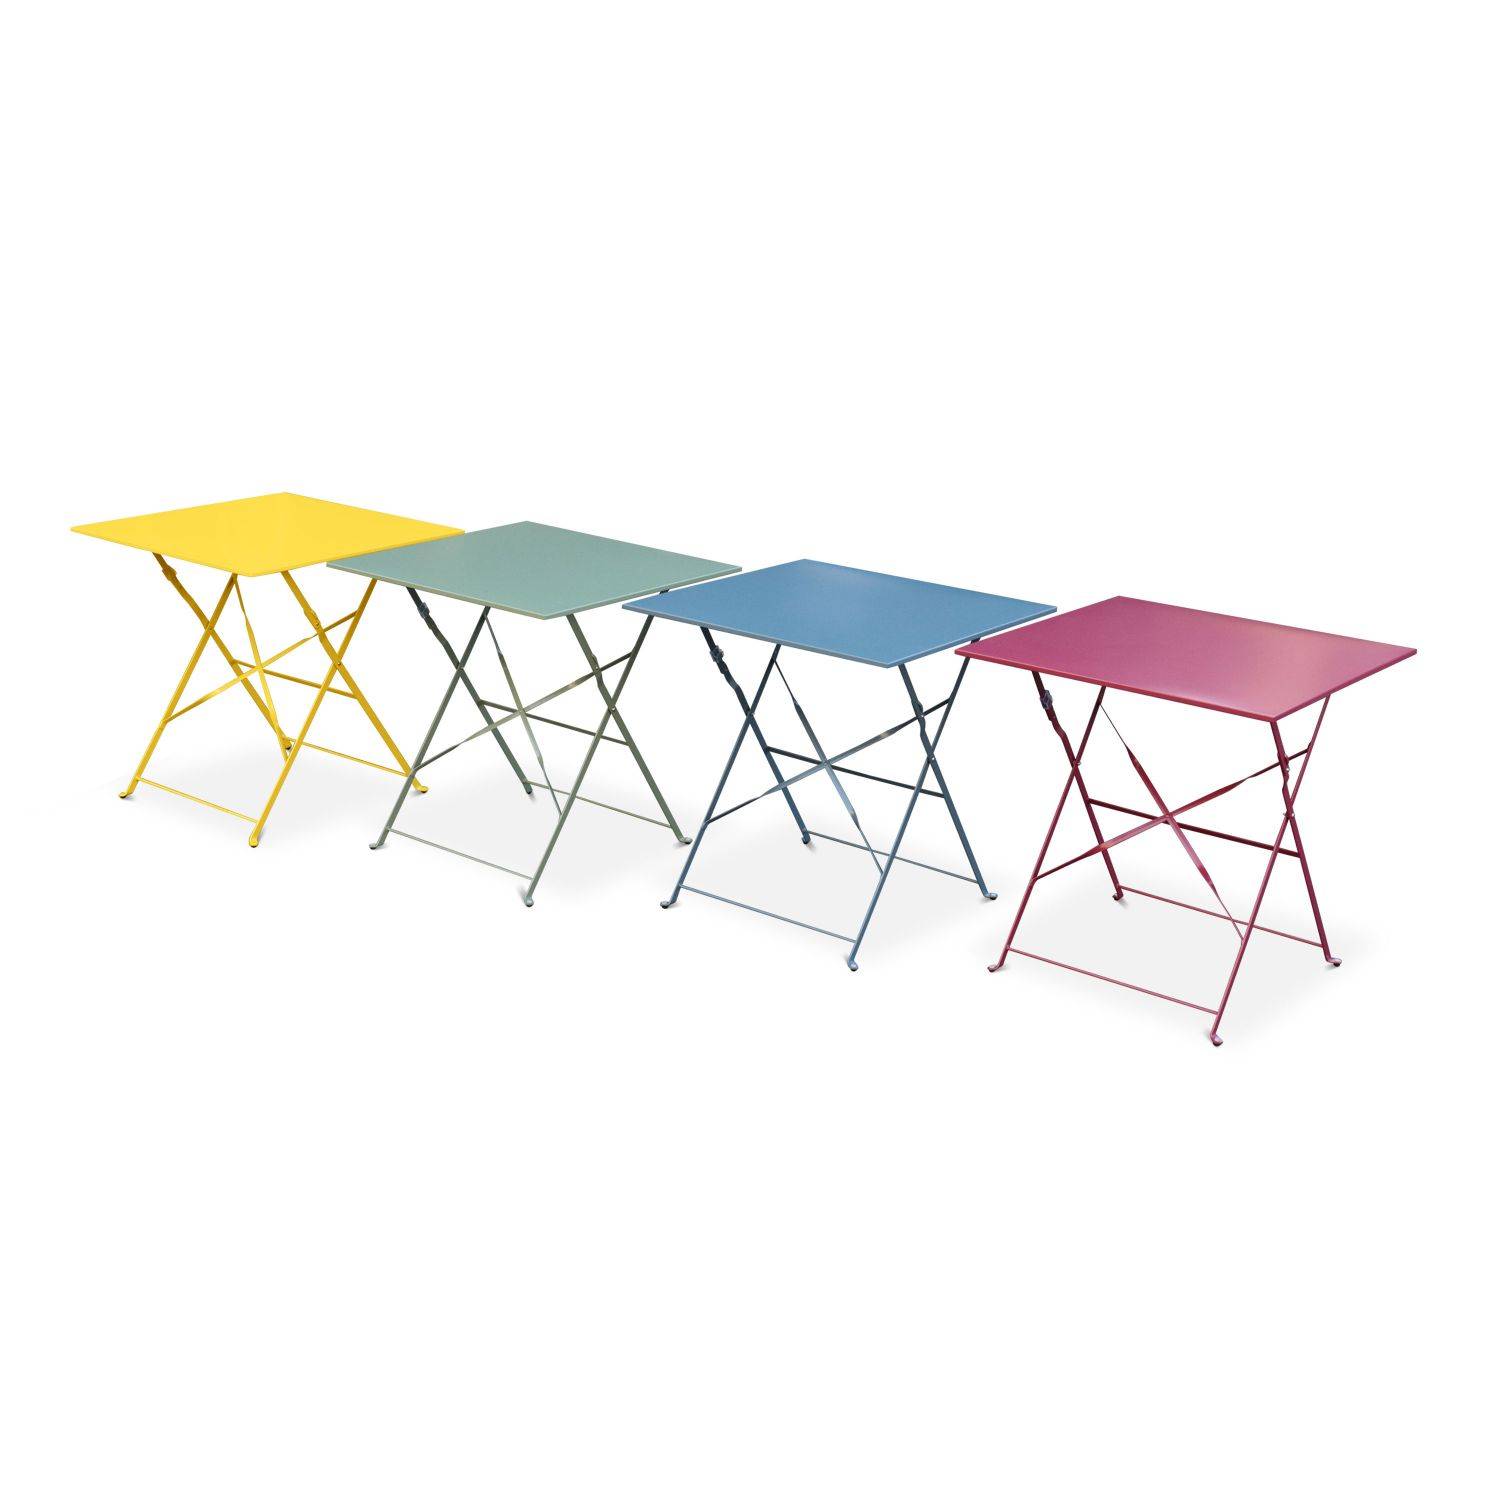 Klappbarer Bistro-Gartentisch - Emilia quadratisch gelb - Quadratischer Tisch 70x70cm aus pulverbeschichtetem Stahl Photo4